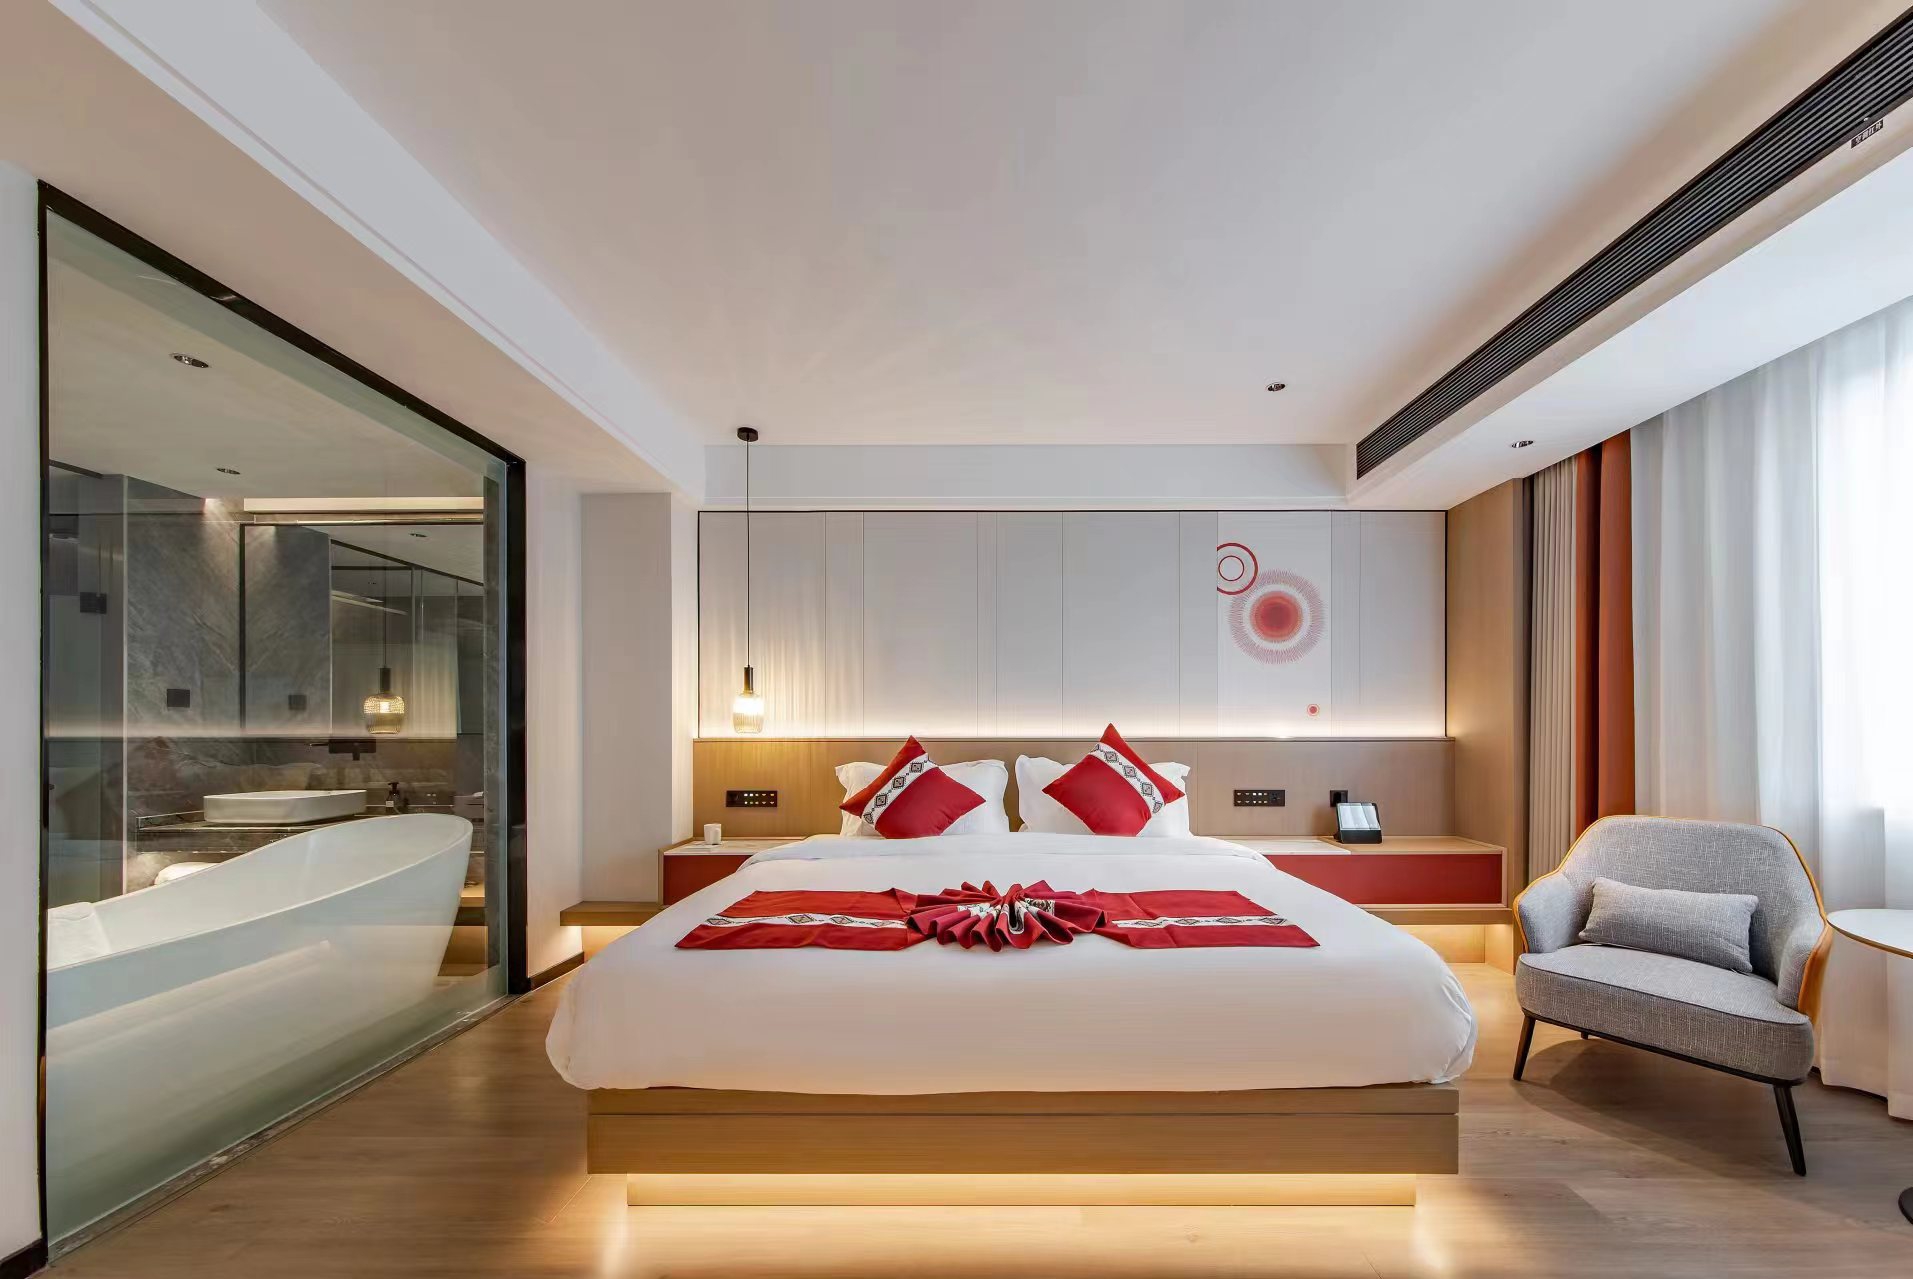 澜沧旺嘉酒店🏨 住在这里，酒店本身宽敞明亮，客房充满了温馨的氛围，床很舒服，浴室很干净，设施齐全。 